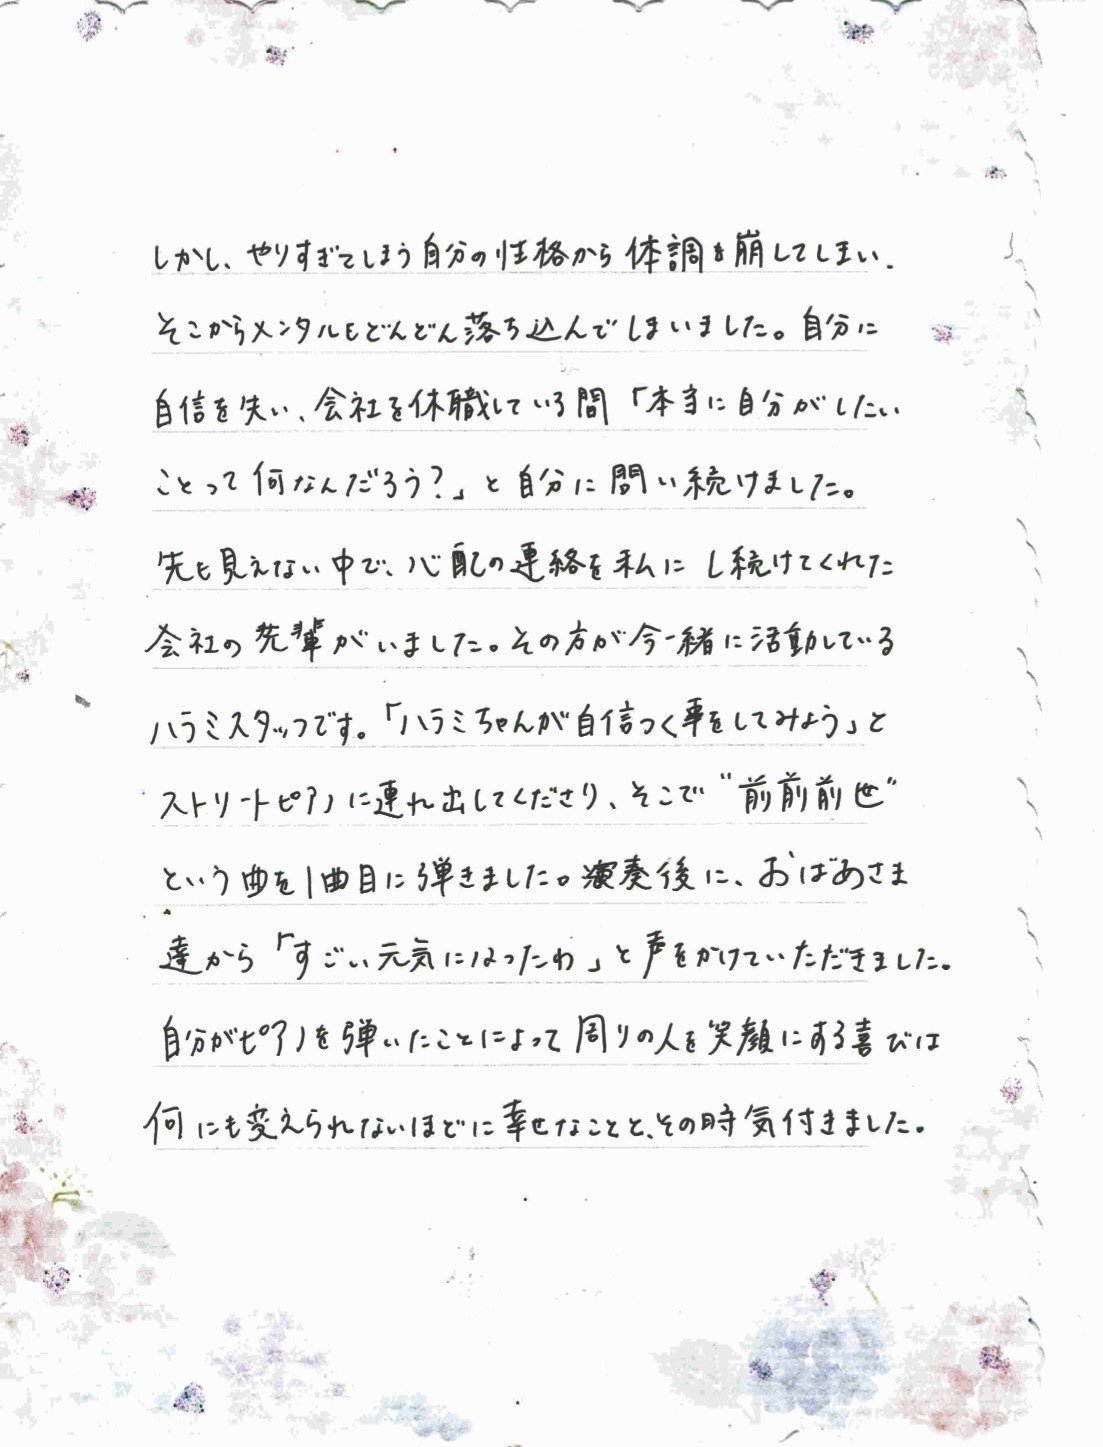 ハラミちゃんからの1周年記念のお手紙 もとぴー Note